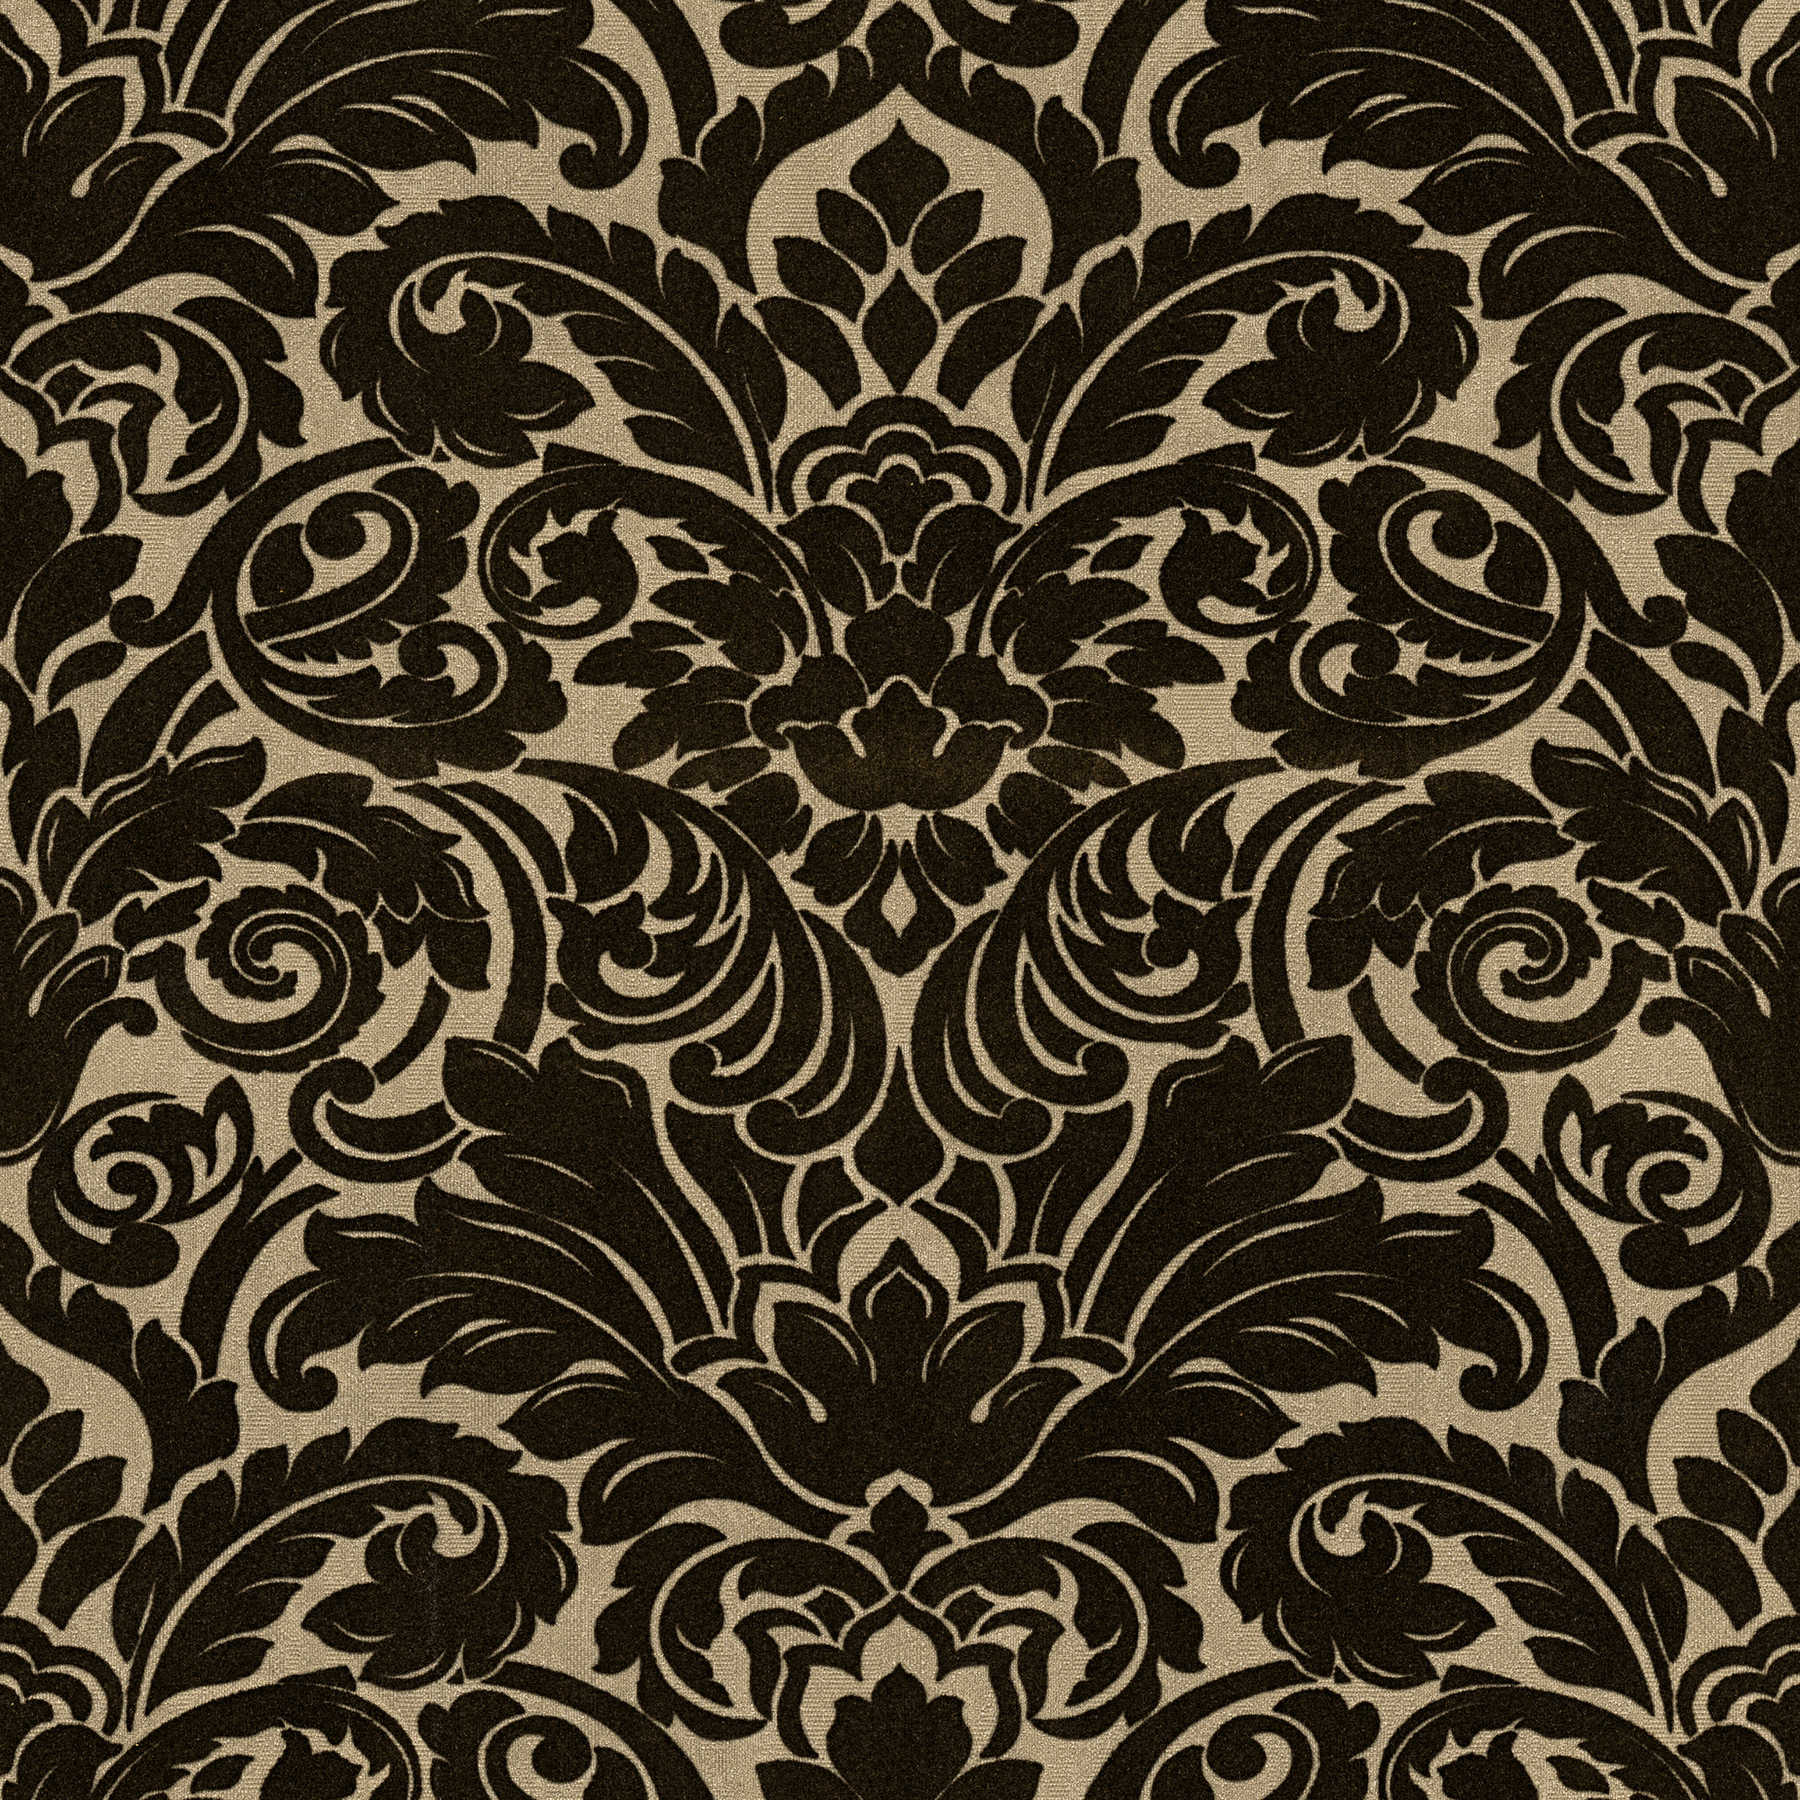 Barok behang met textiel gevoel & goud effect - zwart
